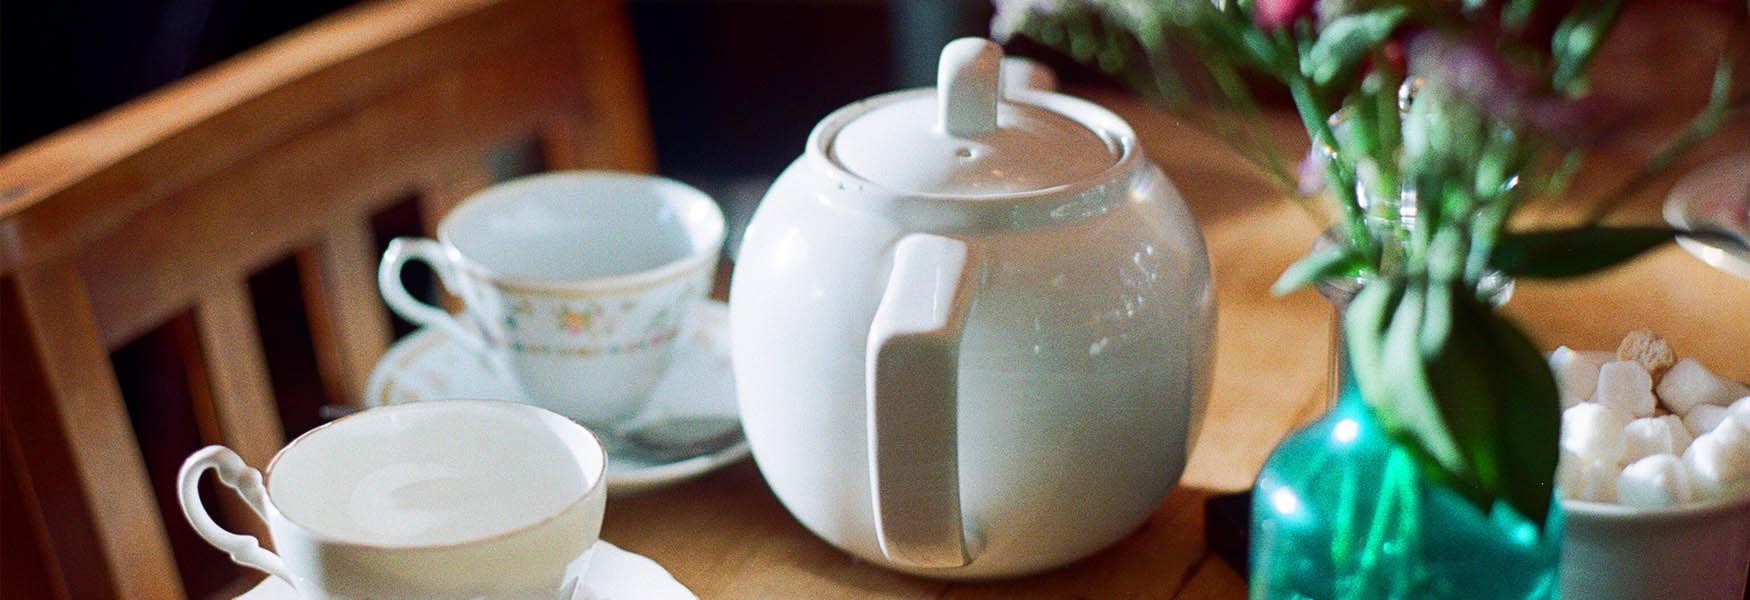 tea room in bedfordshire